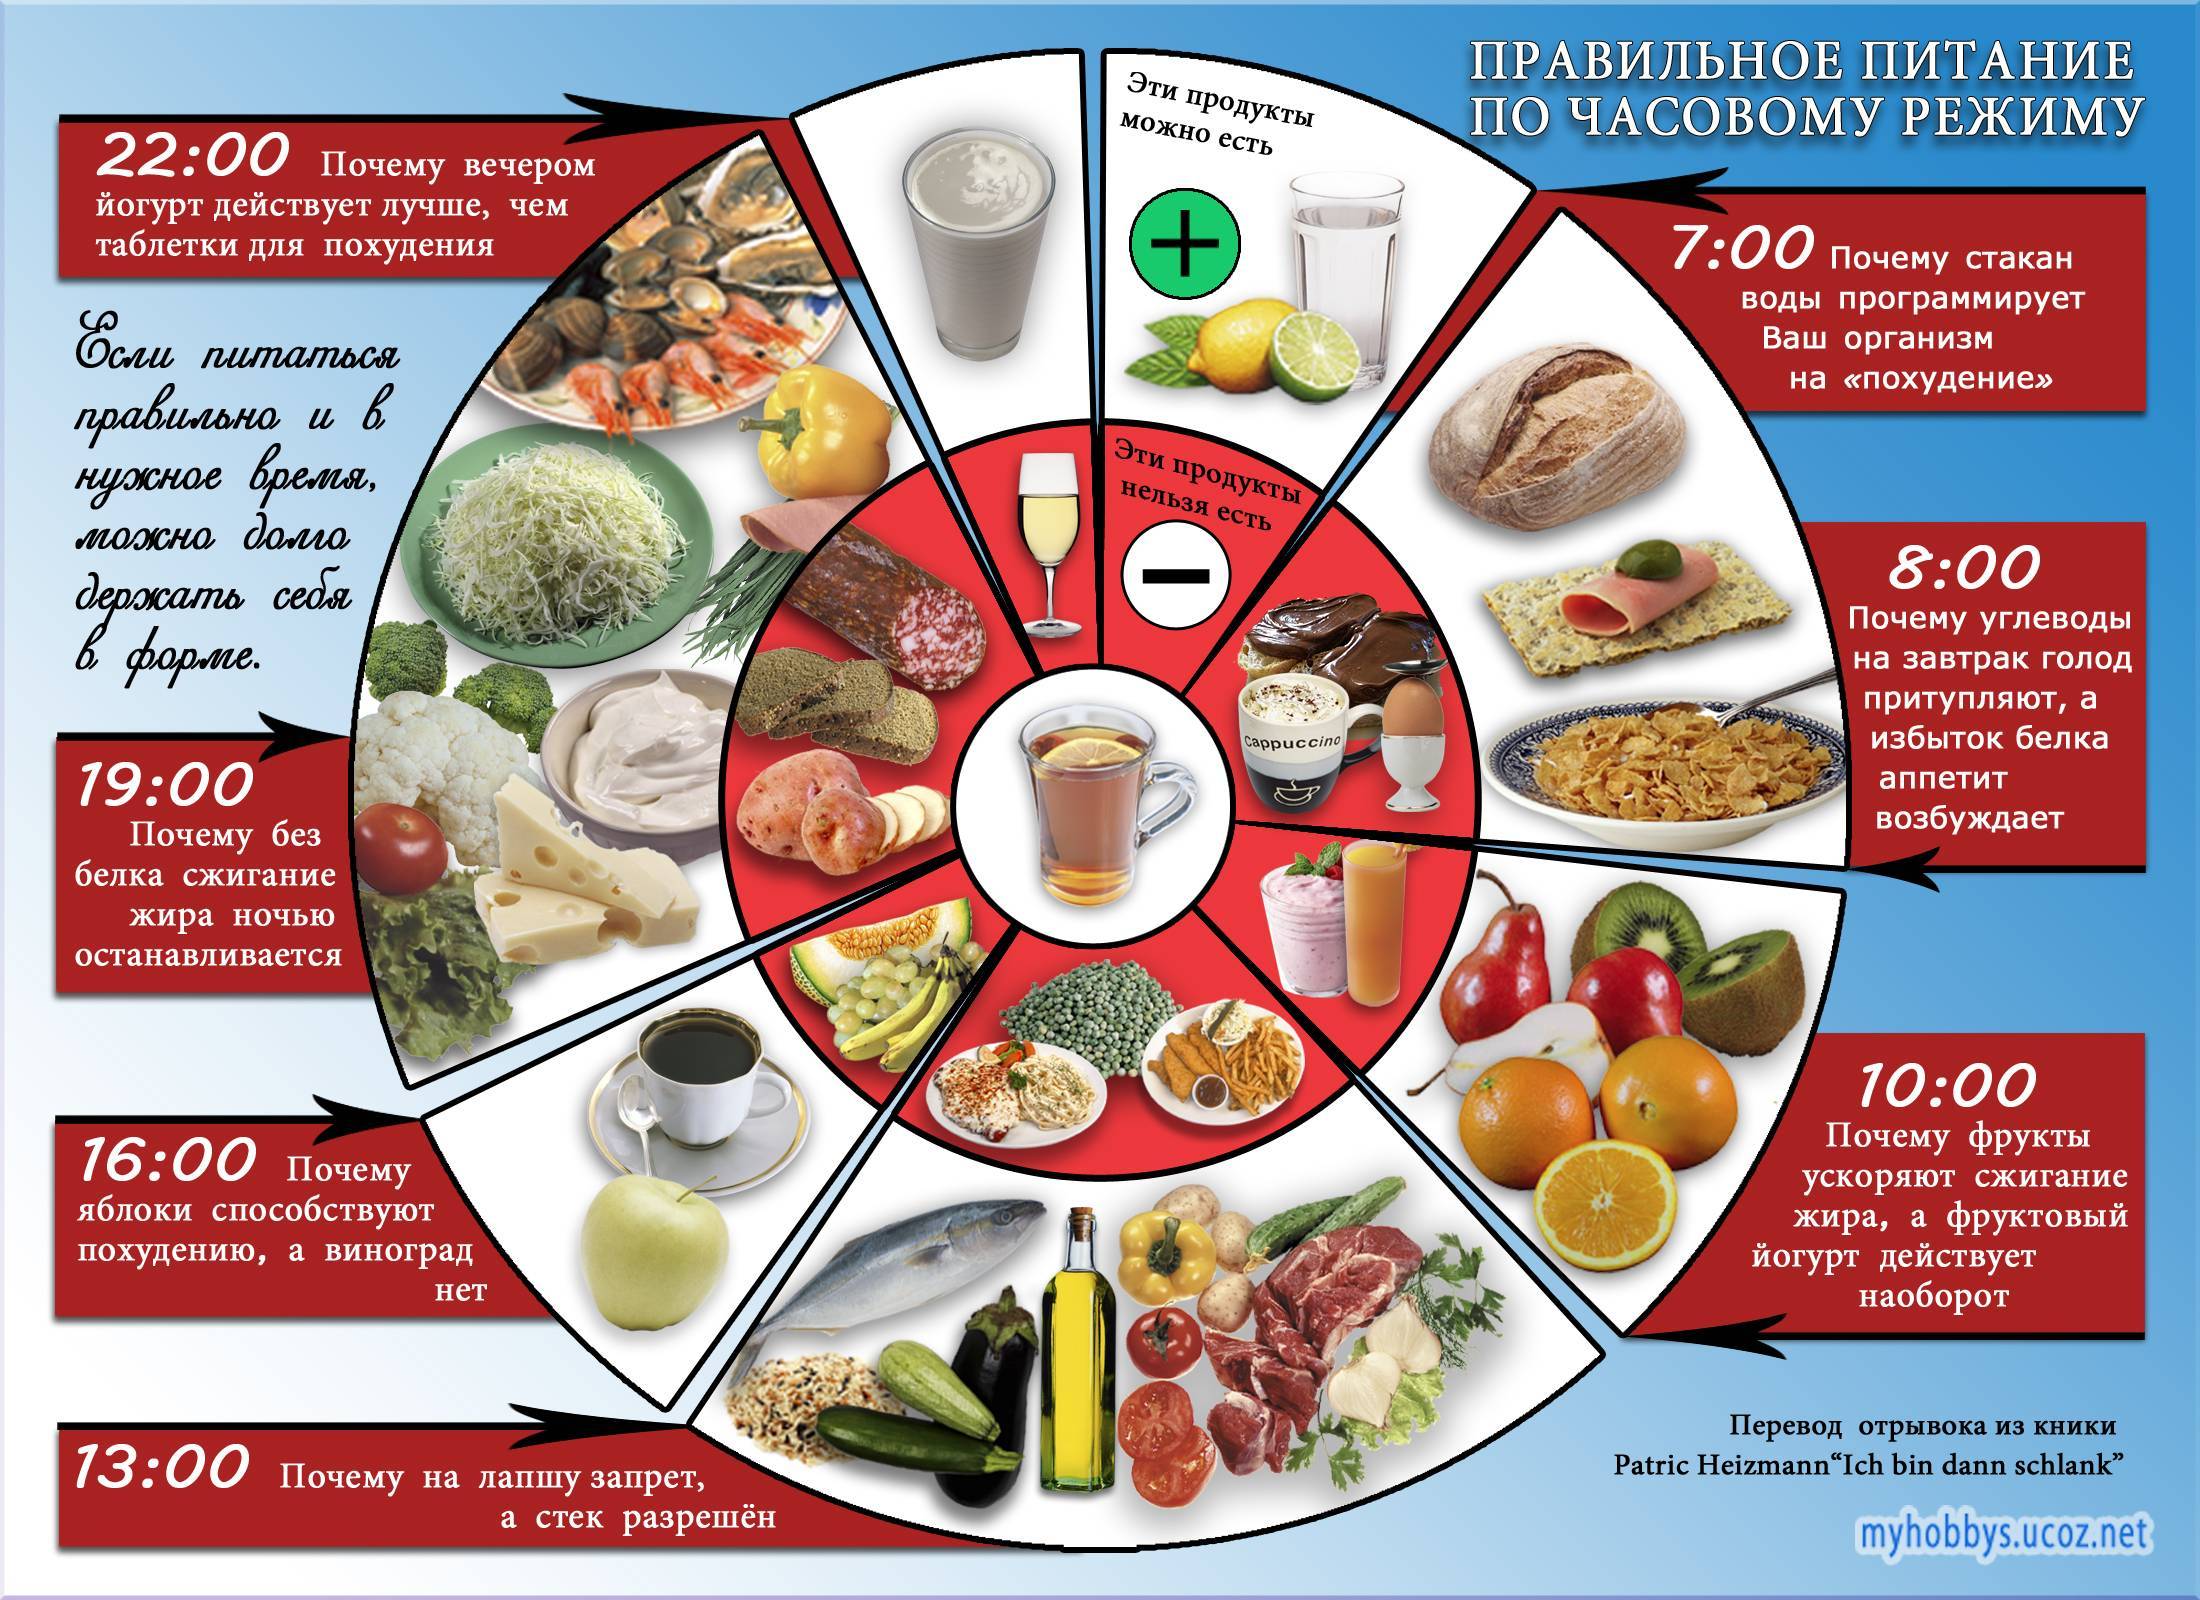 Пп меню на праздники: здоровье питание